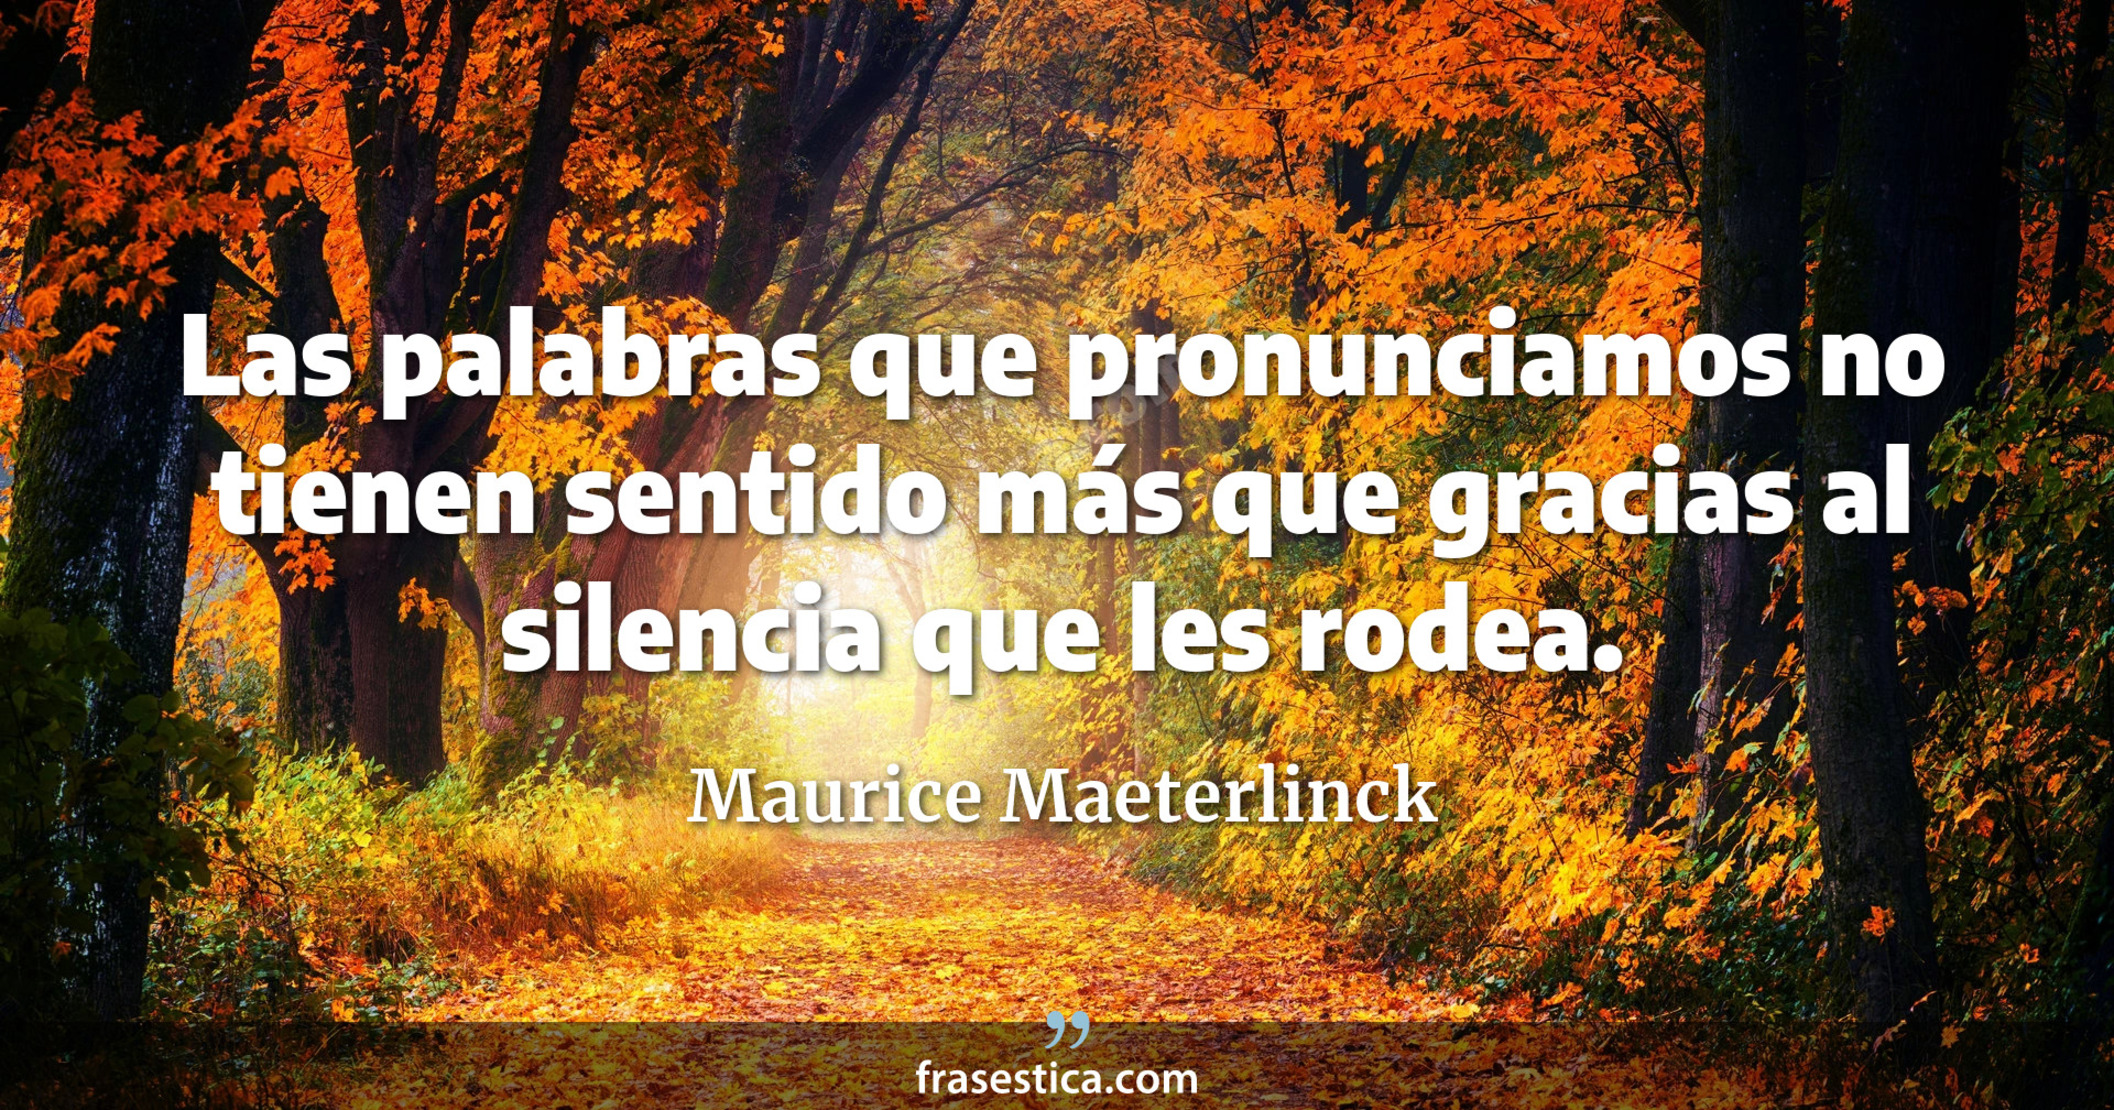 Las palabras que pronunciamos no tienen sentido más que gracias al silencia que les rodea. - Maurice Maeterlinck